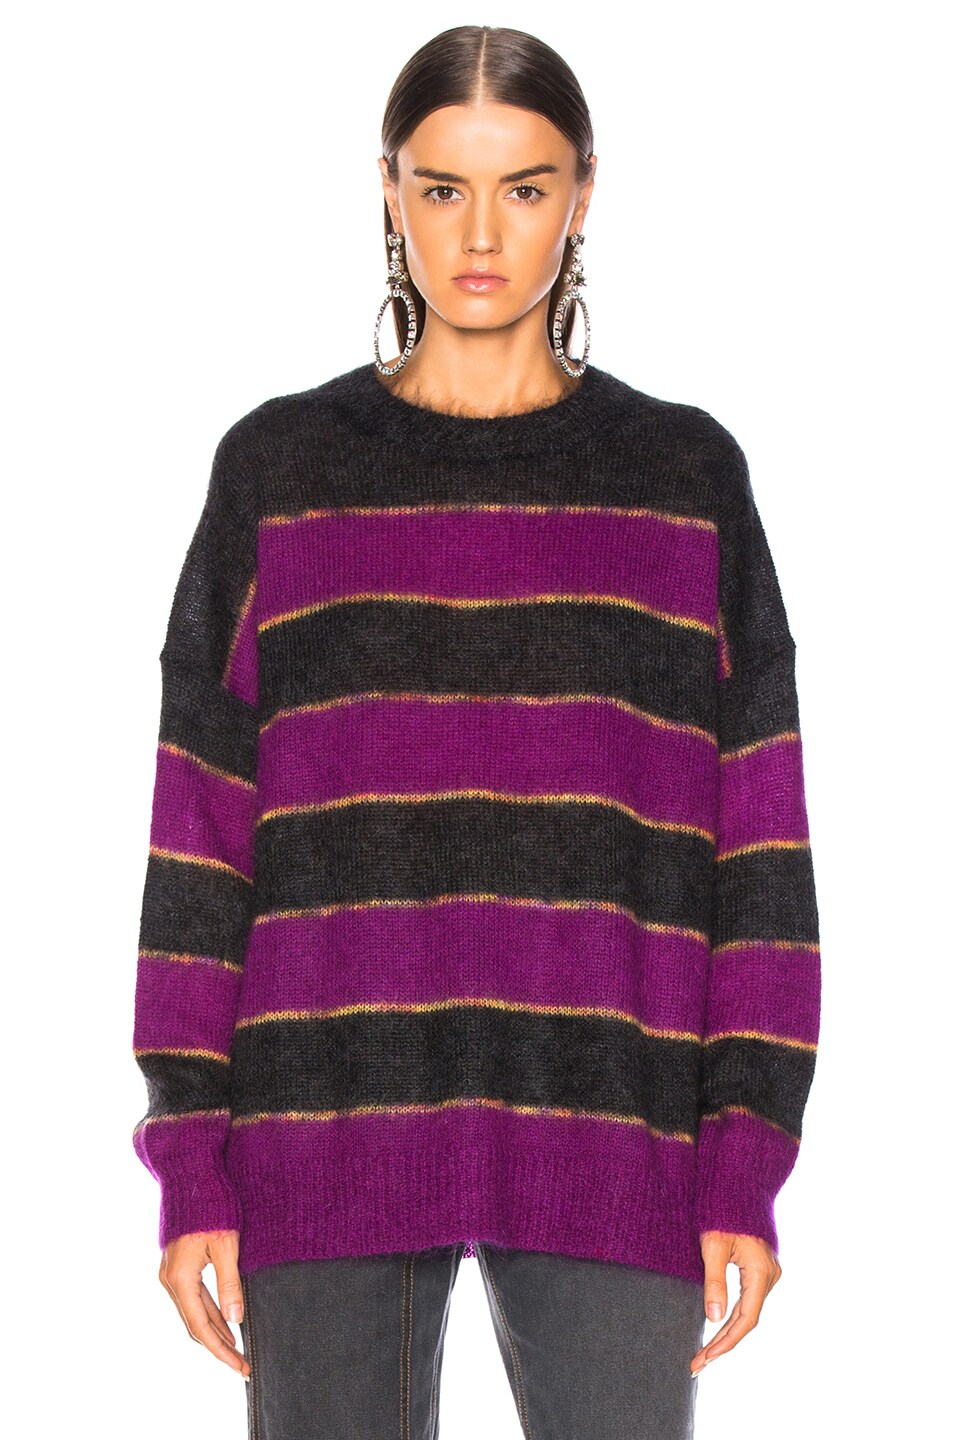 Isabel Marant Etoile Reece Sweater in Faded Black & Purple | FWRD